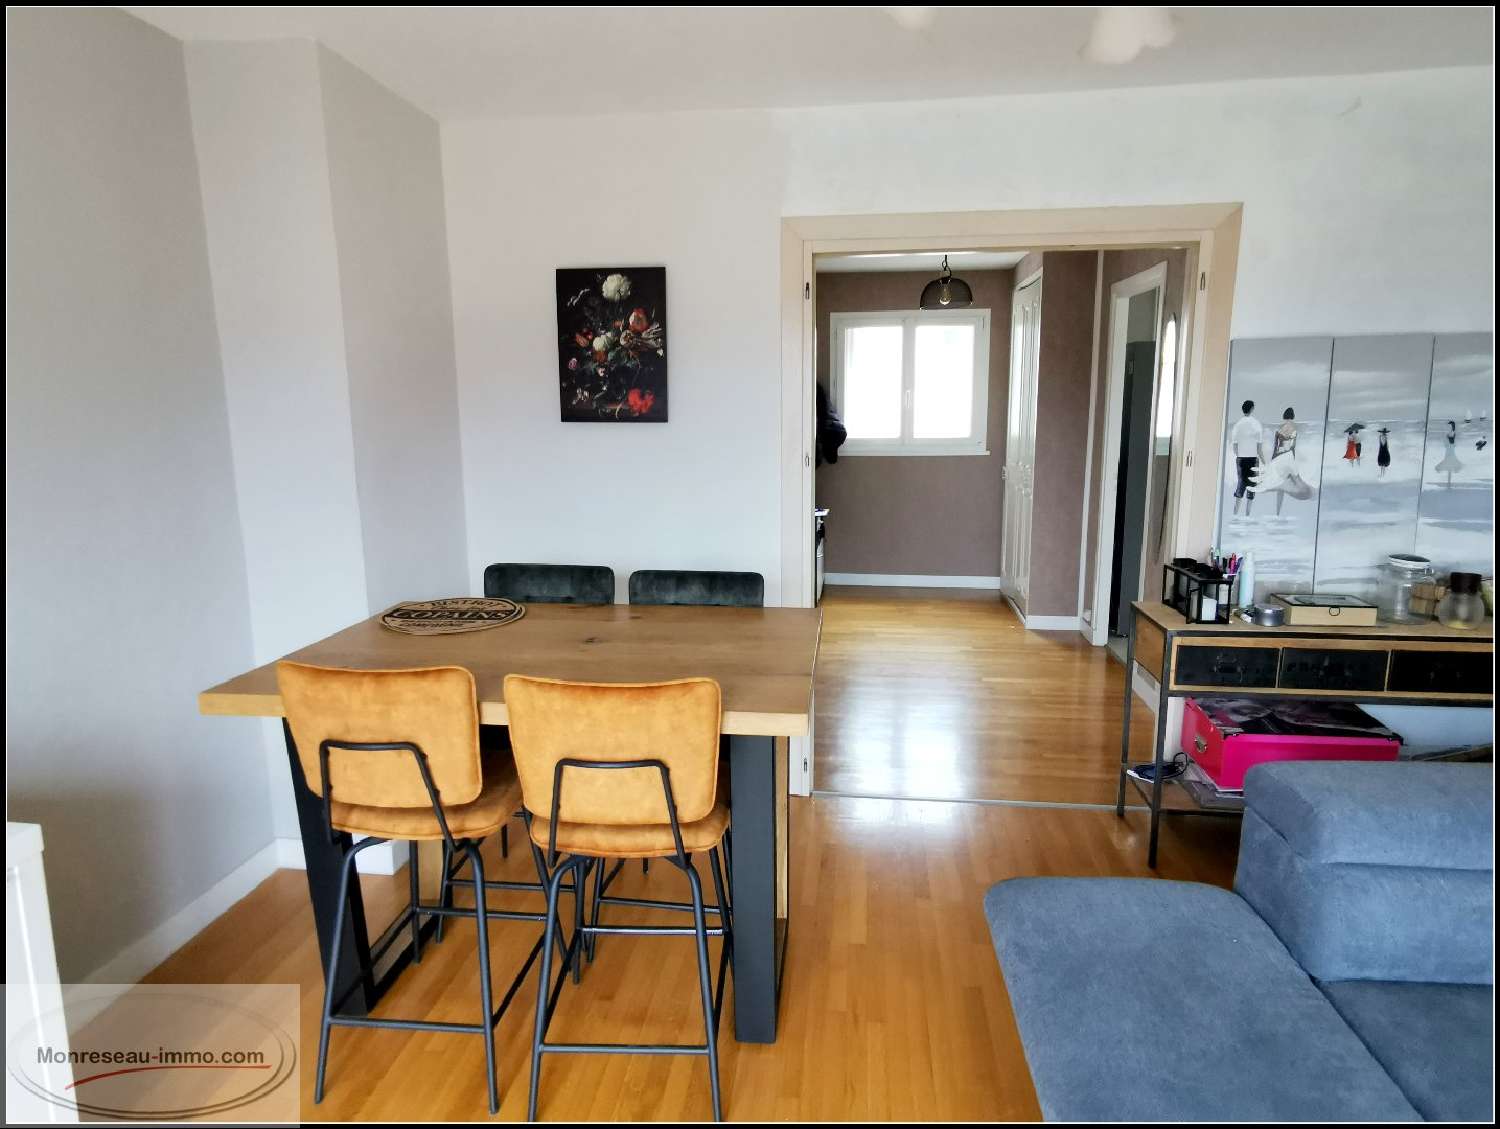  for sale apartment Remiremont Vosges 2